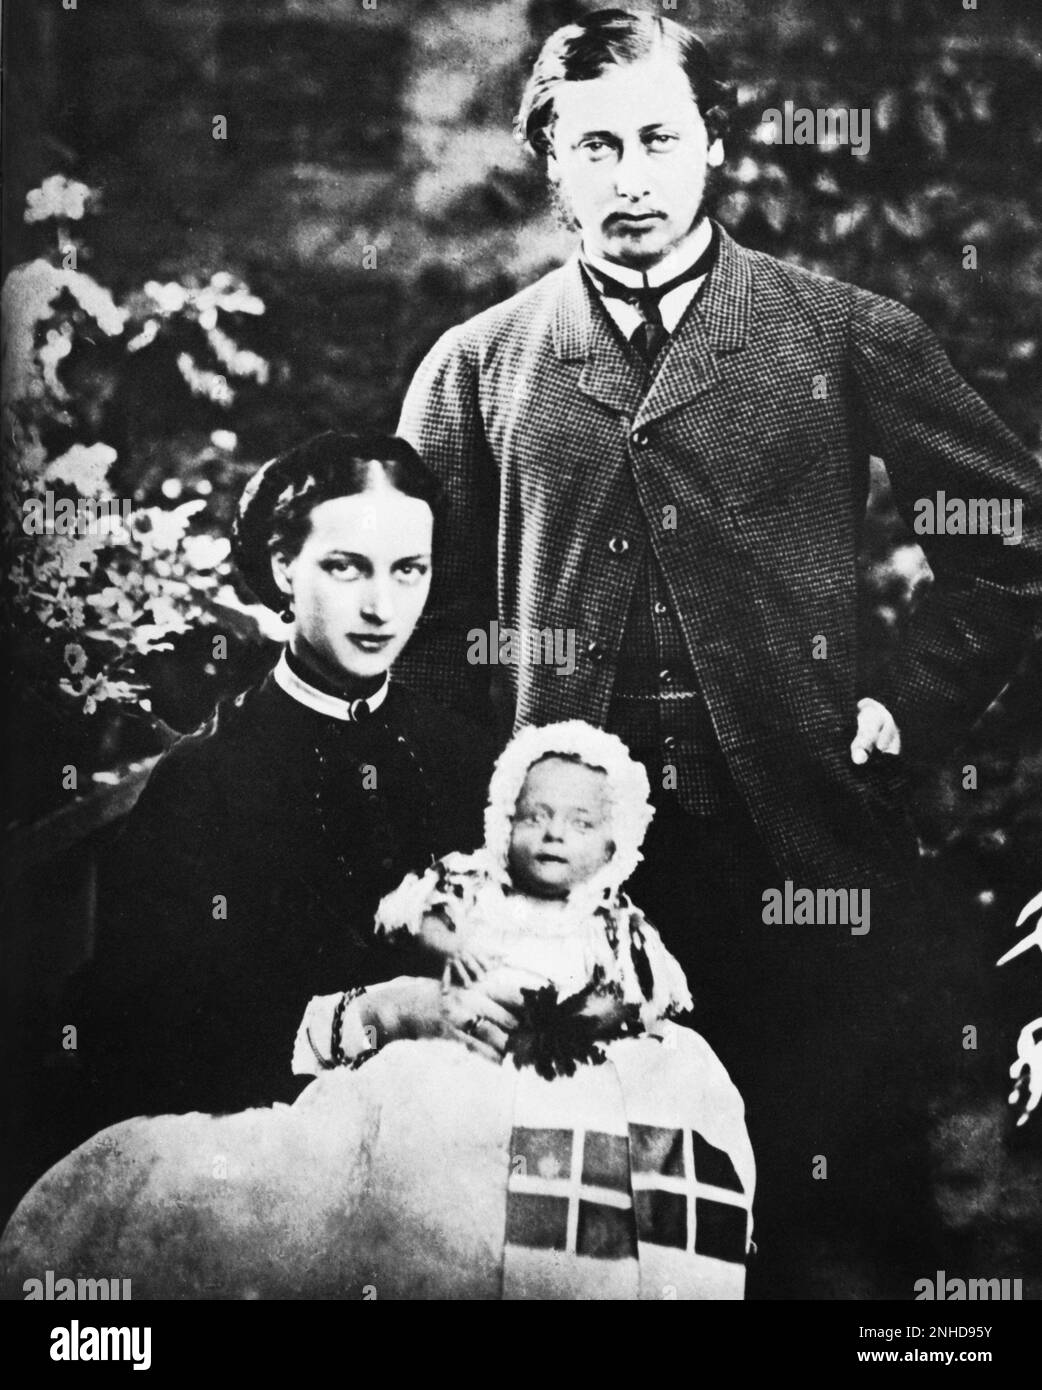 1864 , 8 de enero : la princesa Alejandra de Dinamarca ( 1844 - 1925 ) , futura reina de Inglaterra , con su marido el futuro rey Eduardo VII ( 1841 - 1910 ) de Inglaterra , hijo de la reina Victoria ( 1819 - 1901 ) , Con su primer hijo, el príncipe ALBERTO VÍCTOR Duque de CLARENCE ( Eddy , 1864 - 1892 ) - REALI - REALEZA - nobili - nobiltà - nobleza - regina - re - principe ereditario - Inghilterra - gran bretaña - gran Bretaña - anello - anillo - cignon - colletto - collar - EPOCA VITTORIANA - VICTORIANO - BELLE EPOQUE - familia - famiglia - bebé - neonato - moglie e marito - esposa - coniugi - ritratto Foto de stock